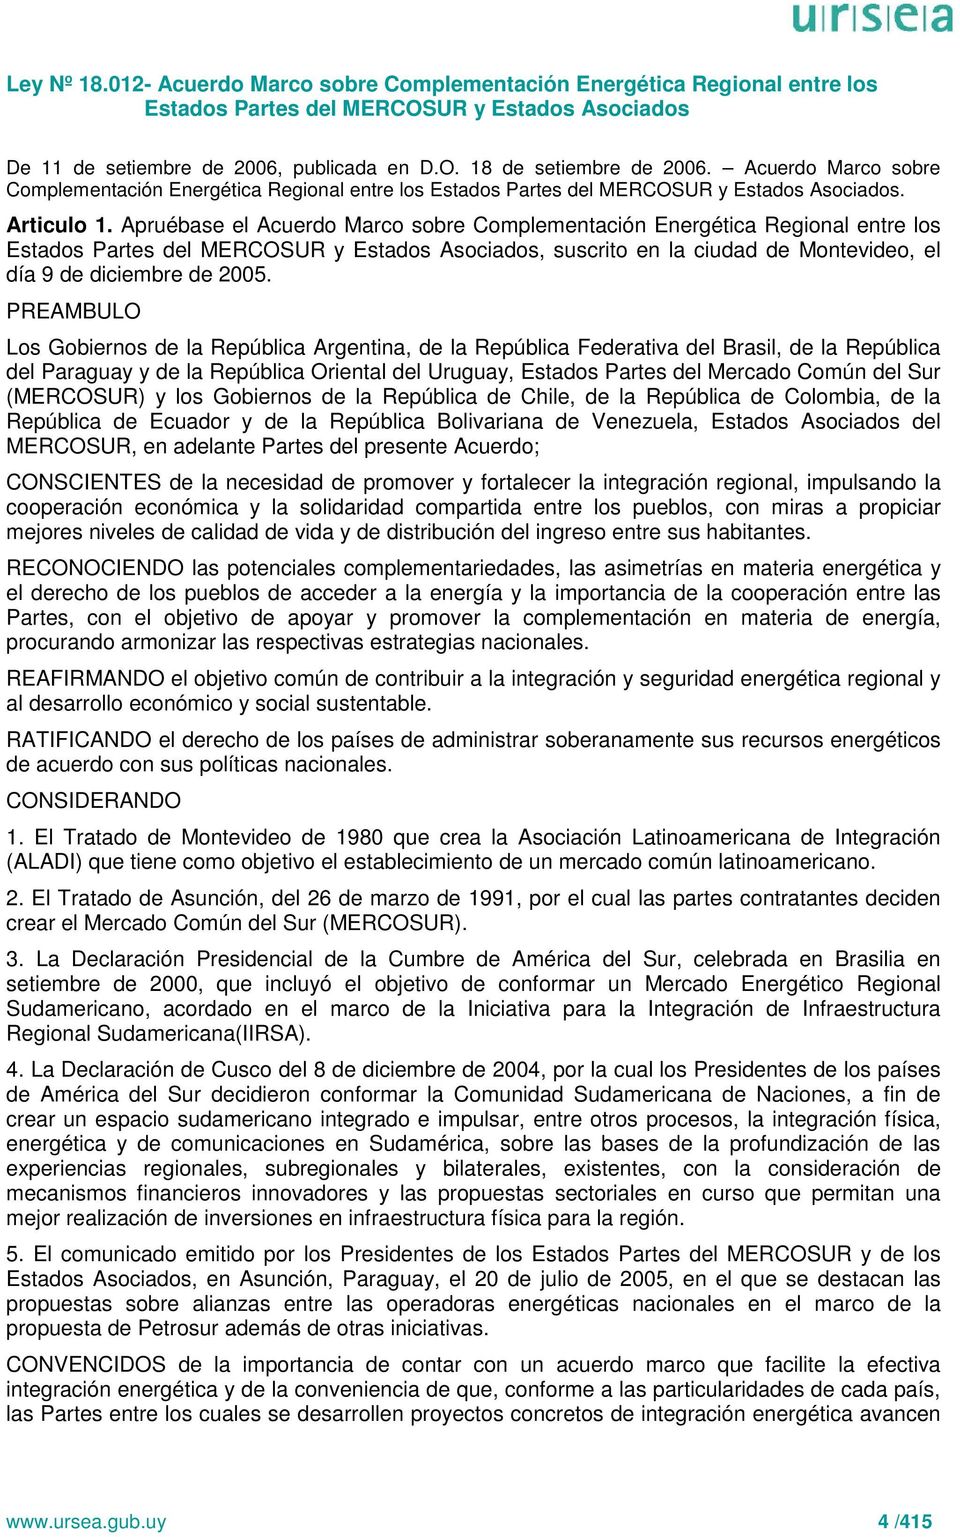 Apruébase el Acuerdo Marco sobre Complementación Energética Regional entre los Estados Partes del MERCOSUR y Estados Asociados, suscrito en la ciudad de Montevideo, el día 9 de diciembre de 2005.